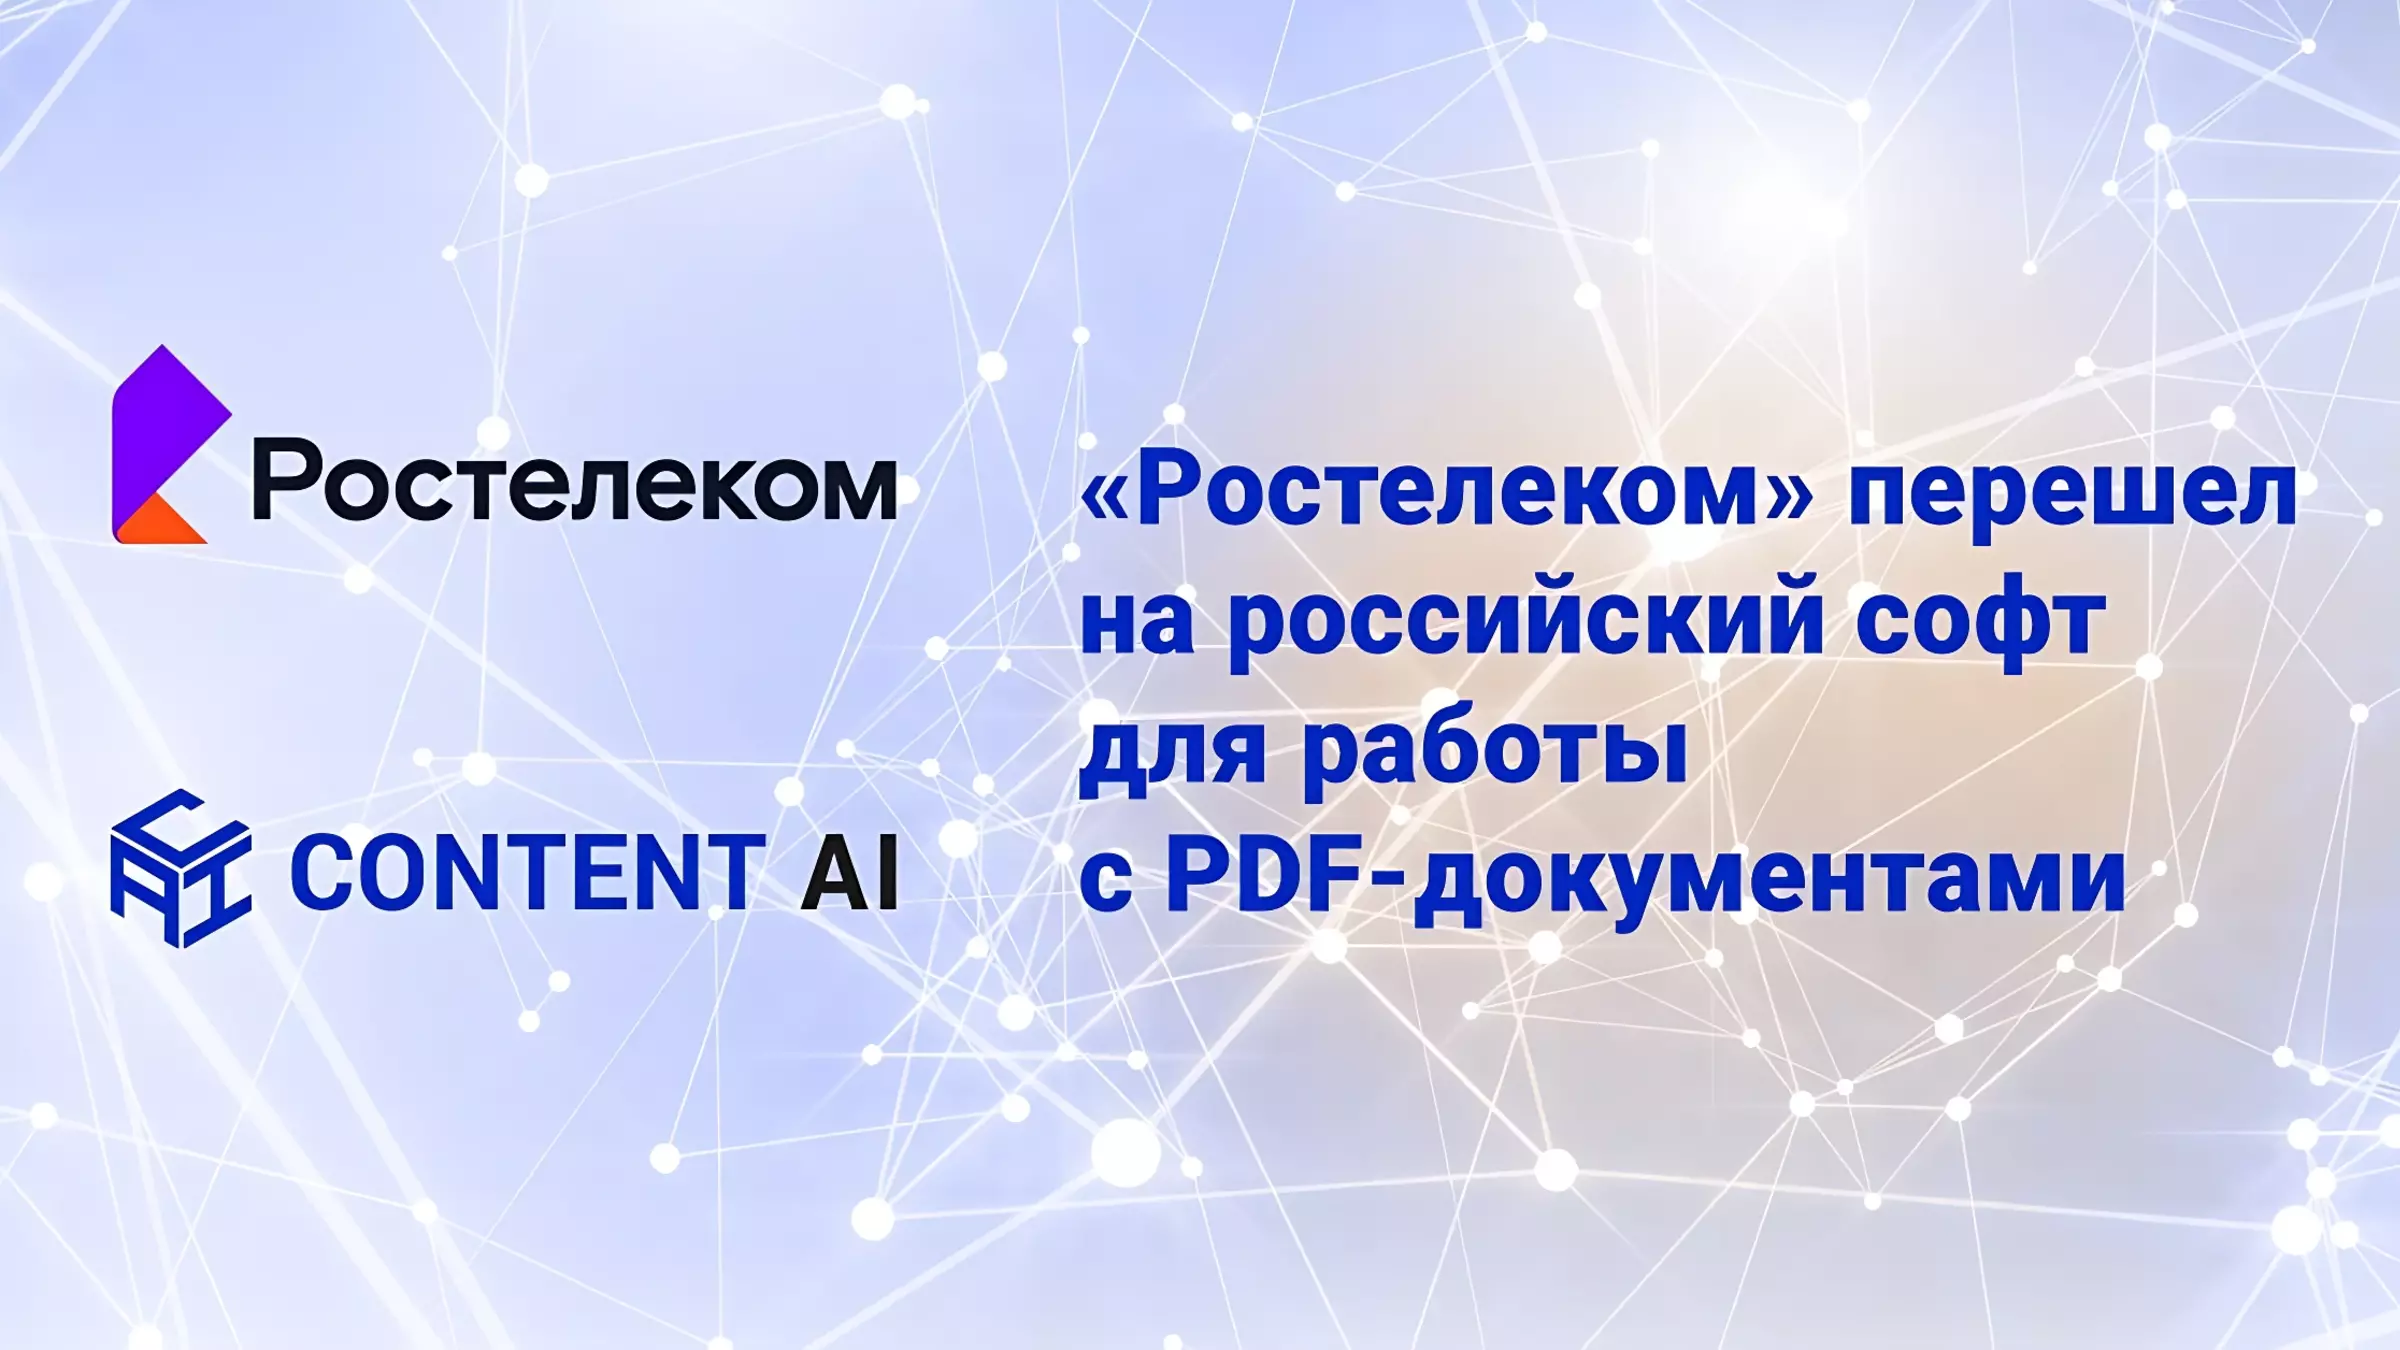 «Ростелеком» перешел на российский софт для работы с PDF-документами